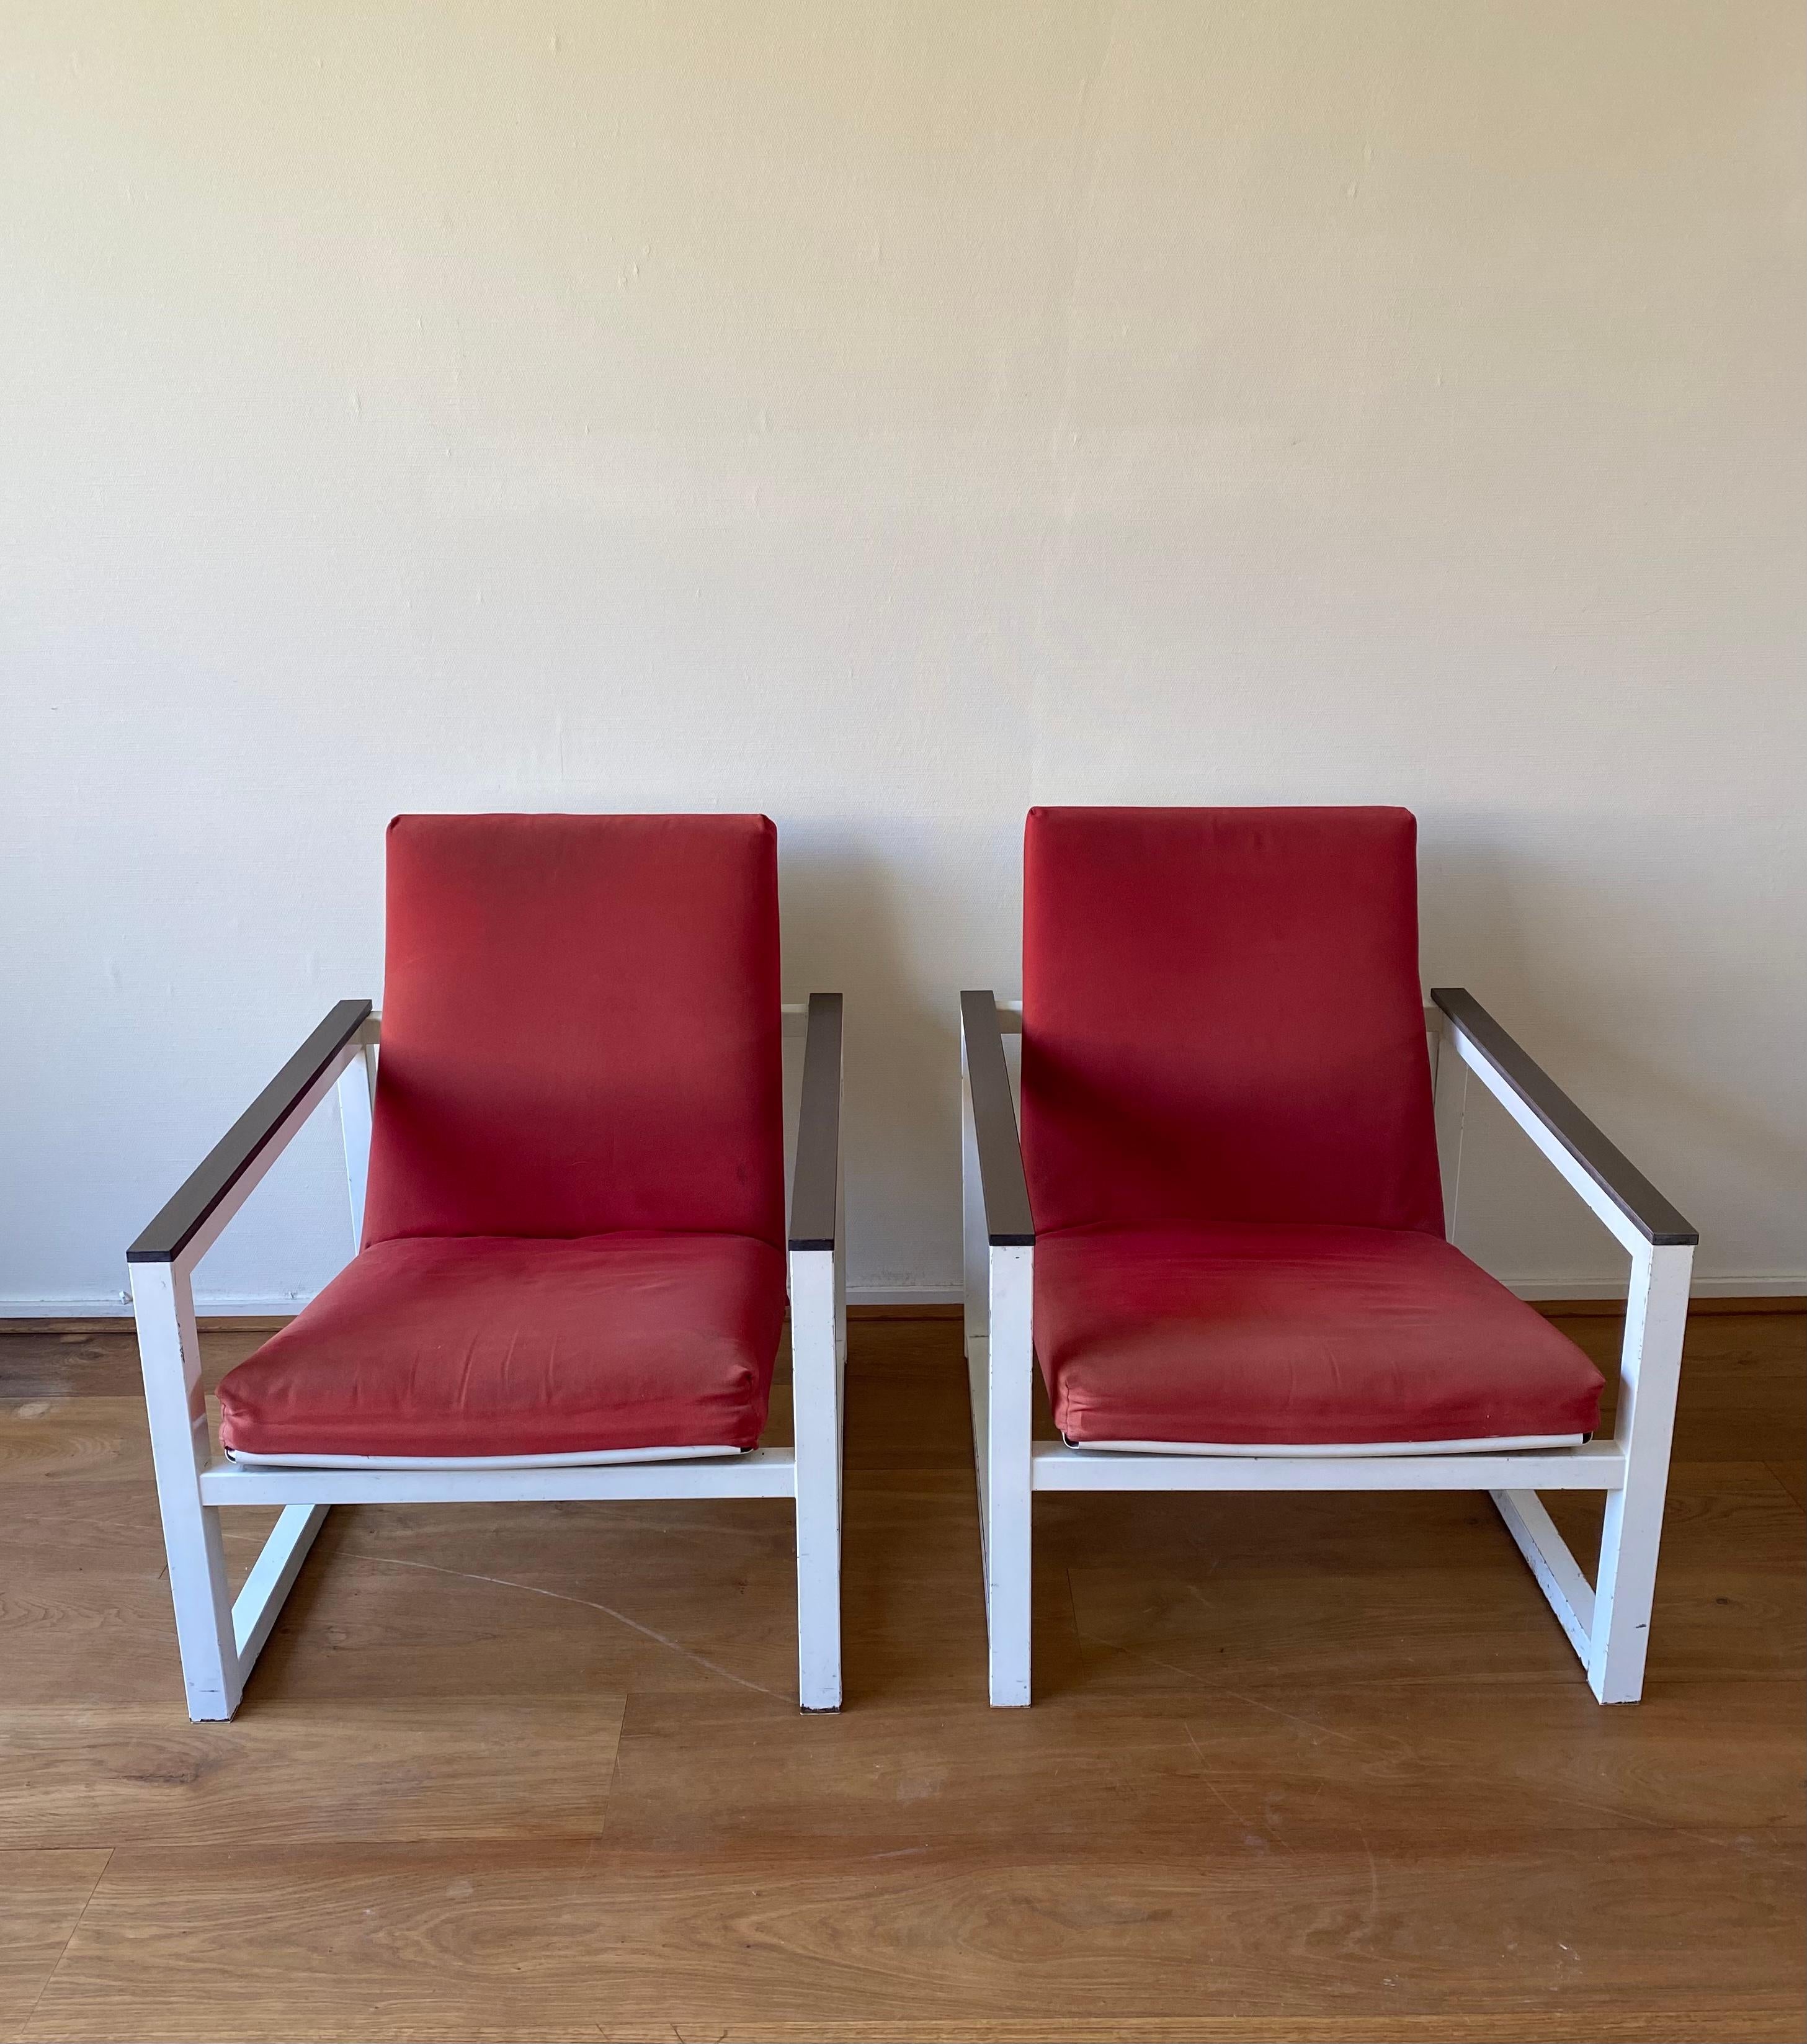 Seltene Lounge-Stühle, entworfen von Tjerk Reijenga und Friso Kramer für Pilastro im Jahr 1965. Der Stuhl selbst wurde 1965 von Tjerk Reijenga für Pilastro entworfen, das Sitzteil von Friso Kramer für Ahrend de Cirkel 1959. Die Stühle haben ein